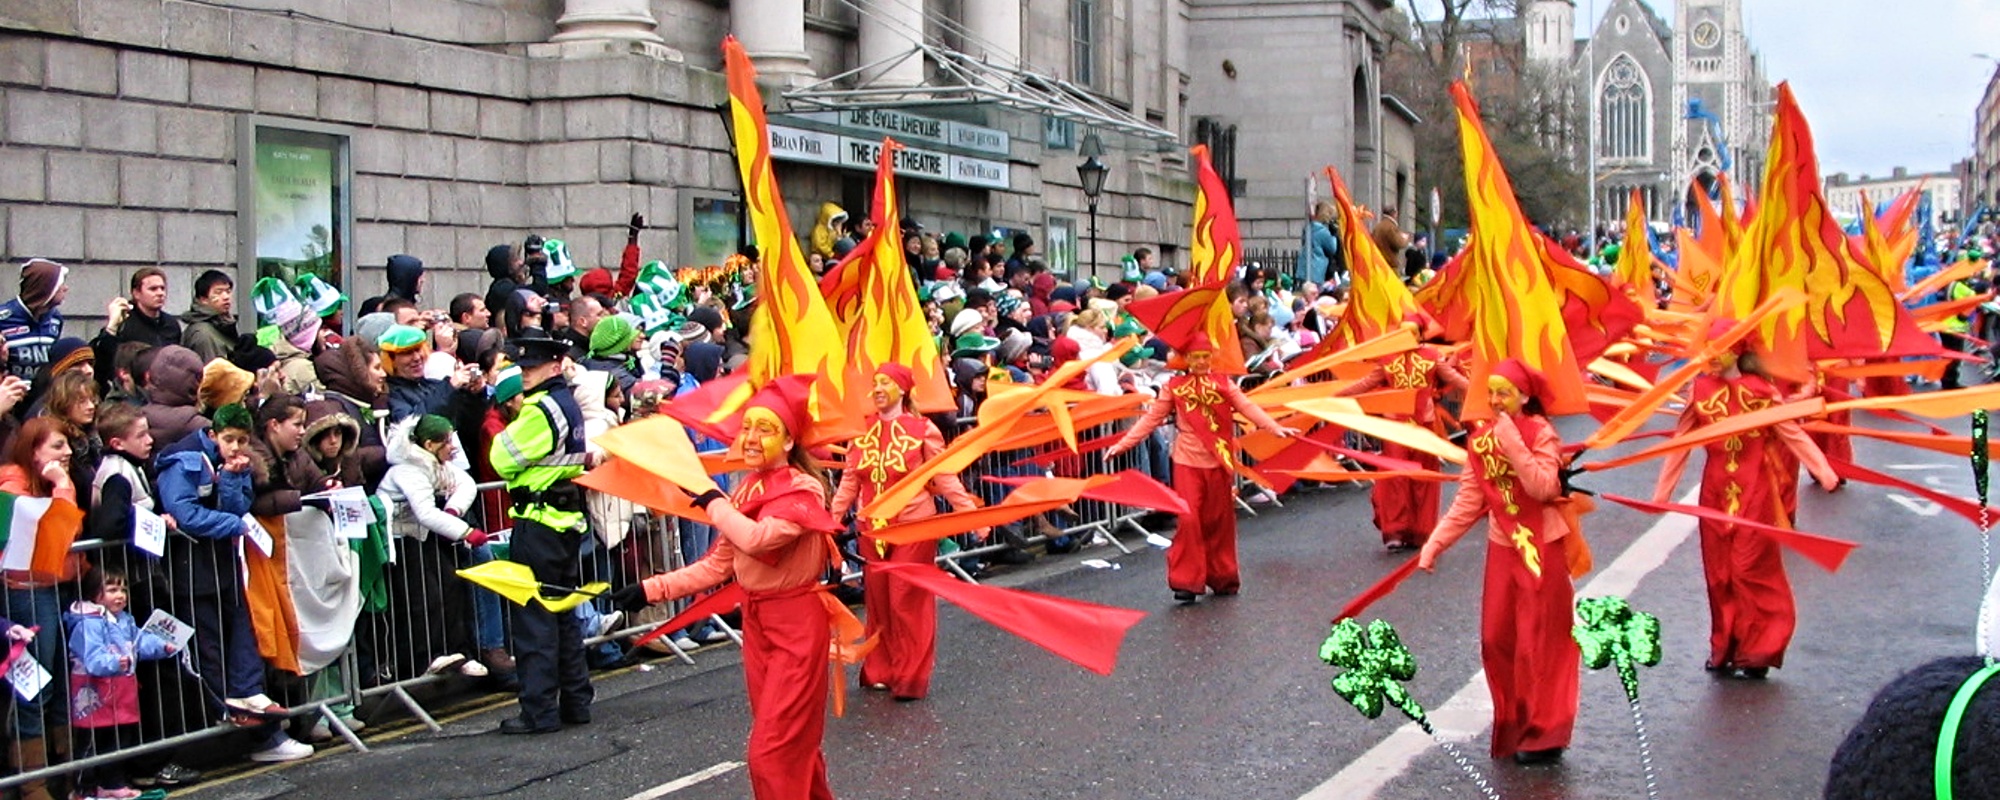 St Patricks Day Parade, Dublin, Ireland